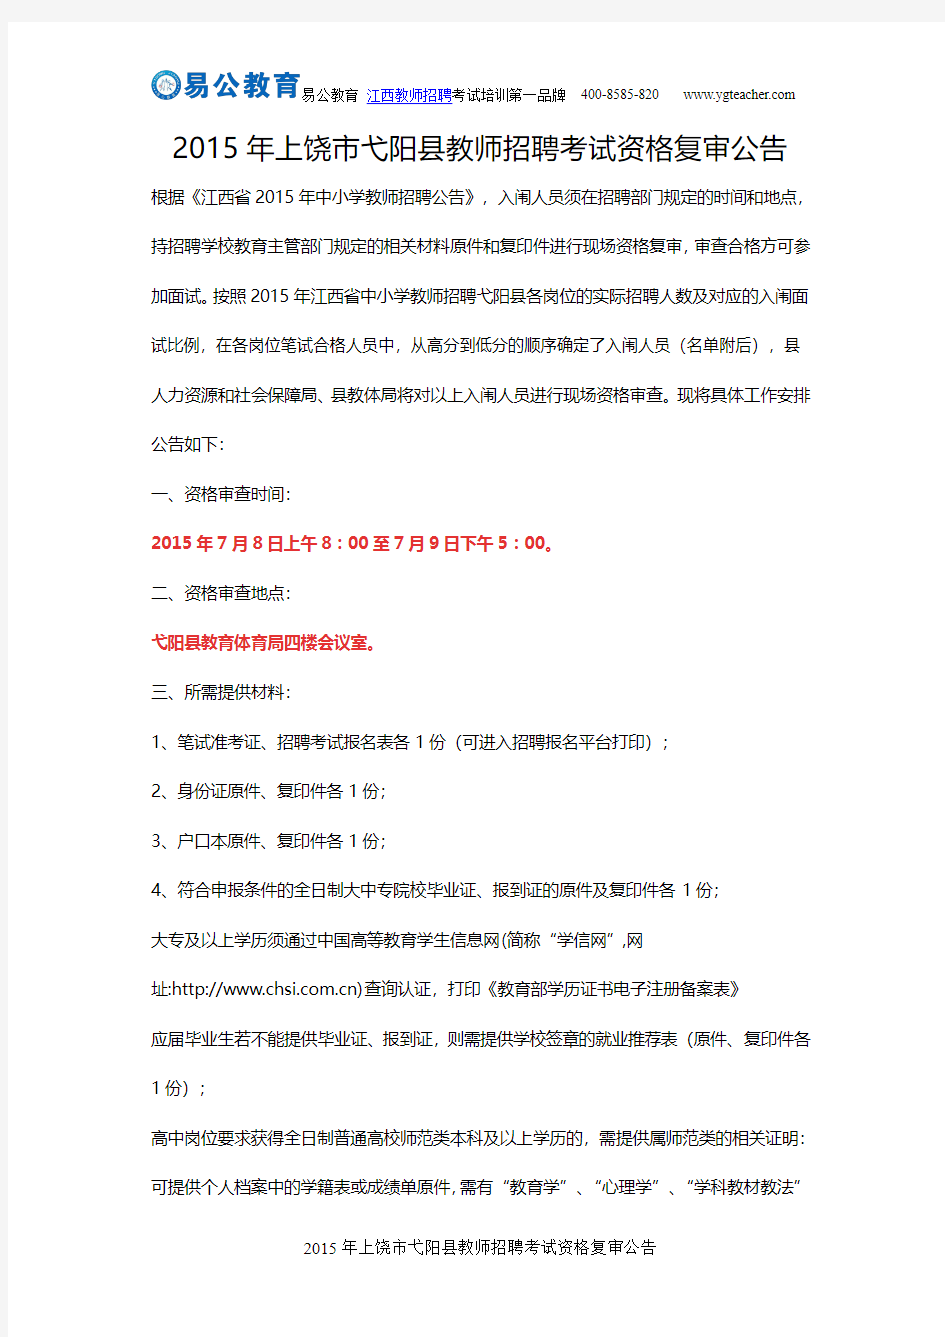 2015年上饶市弋阳县教师招聘考试资格复审公告